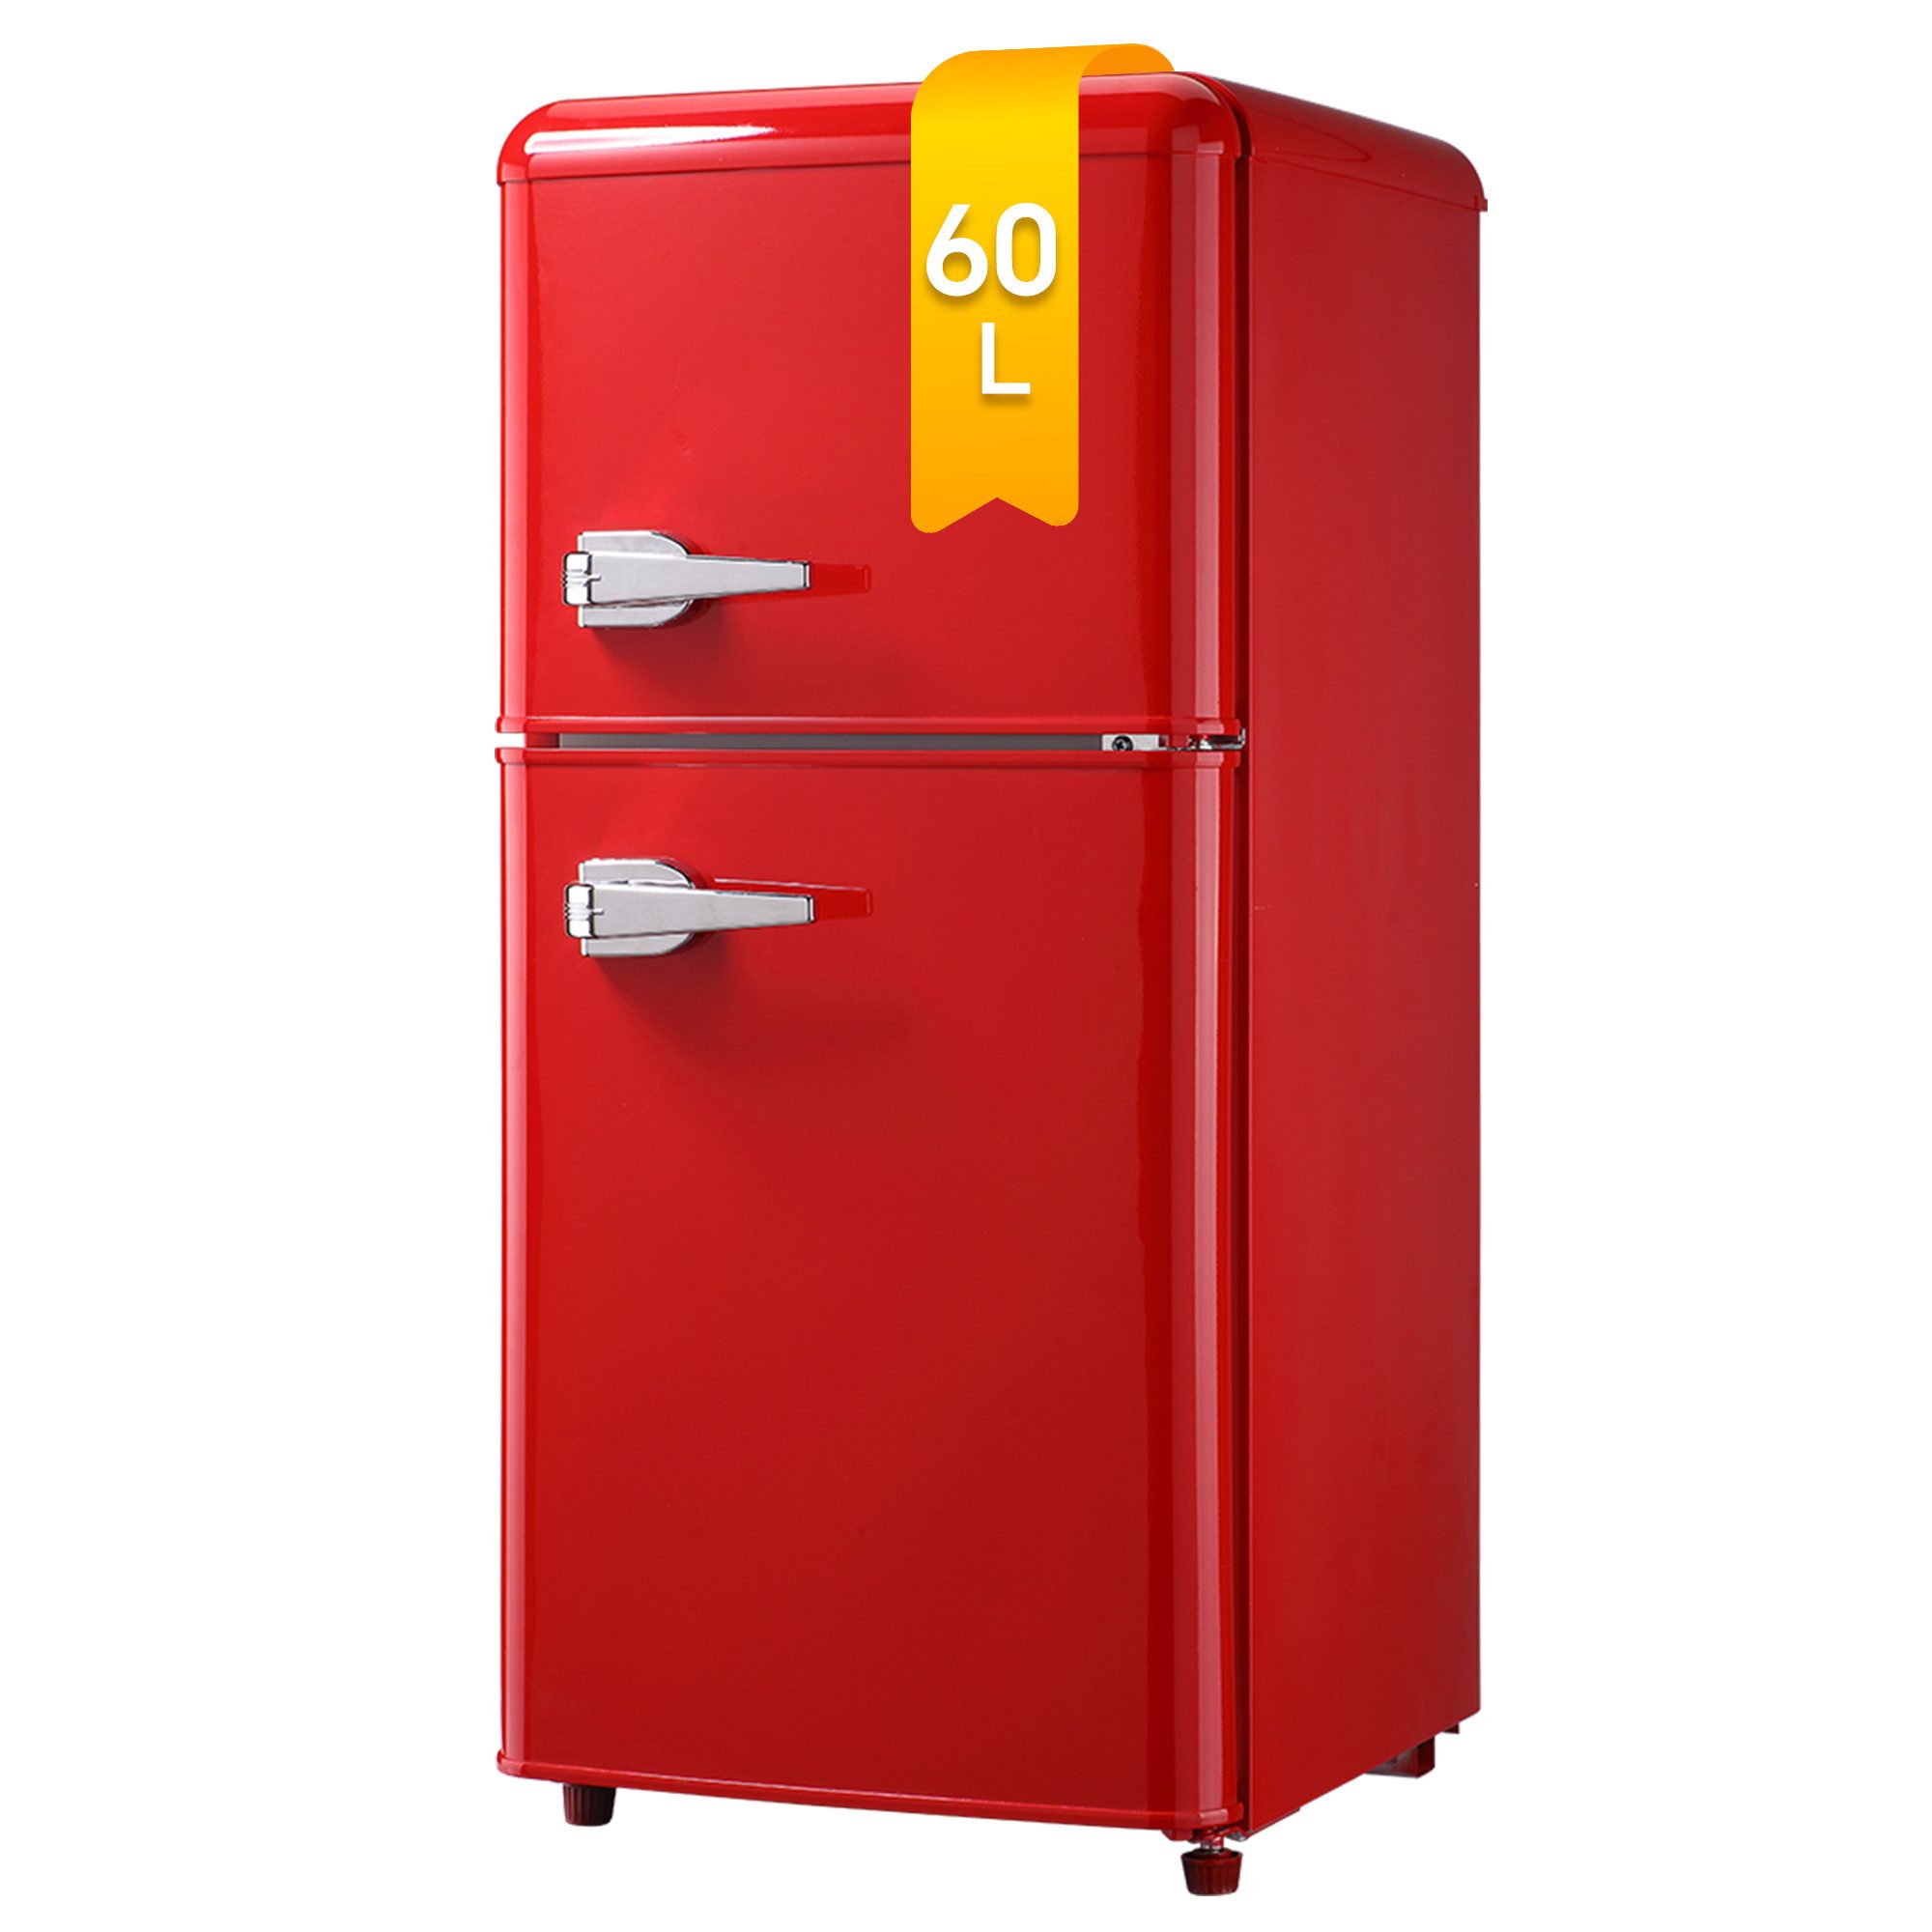 DRIXNO Table Top Kühlschrank BCD-86, 86.8 cm hoch, 42 cm breit, Leise, Jährlicher Energieverbrauch 172 kWh, F-Energieeffizienzklasse